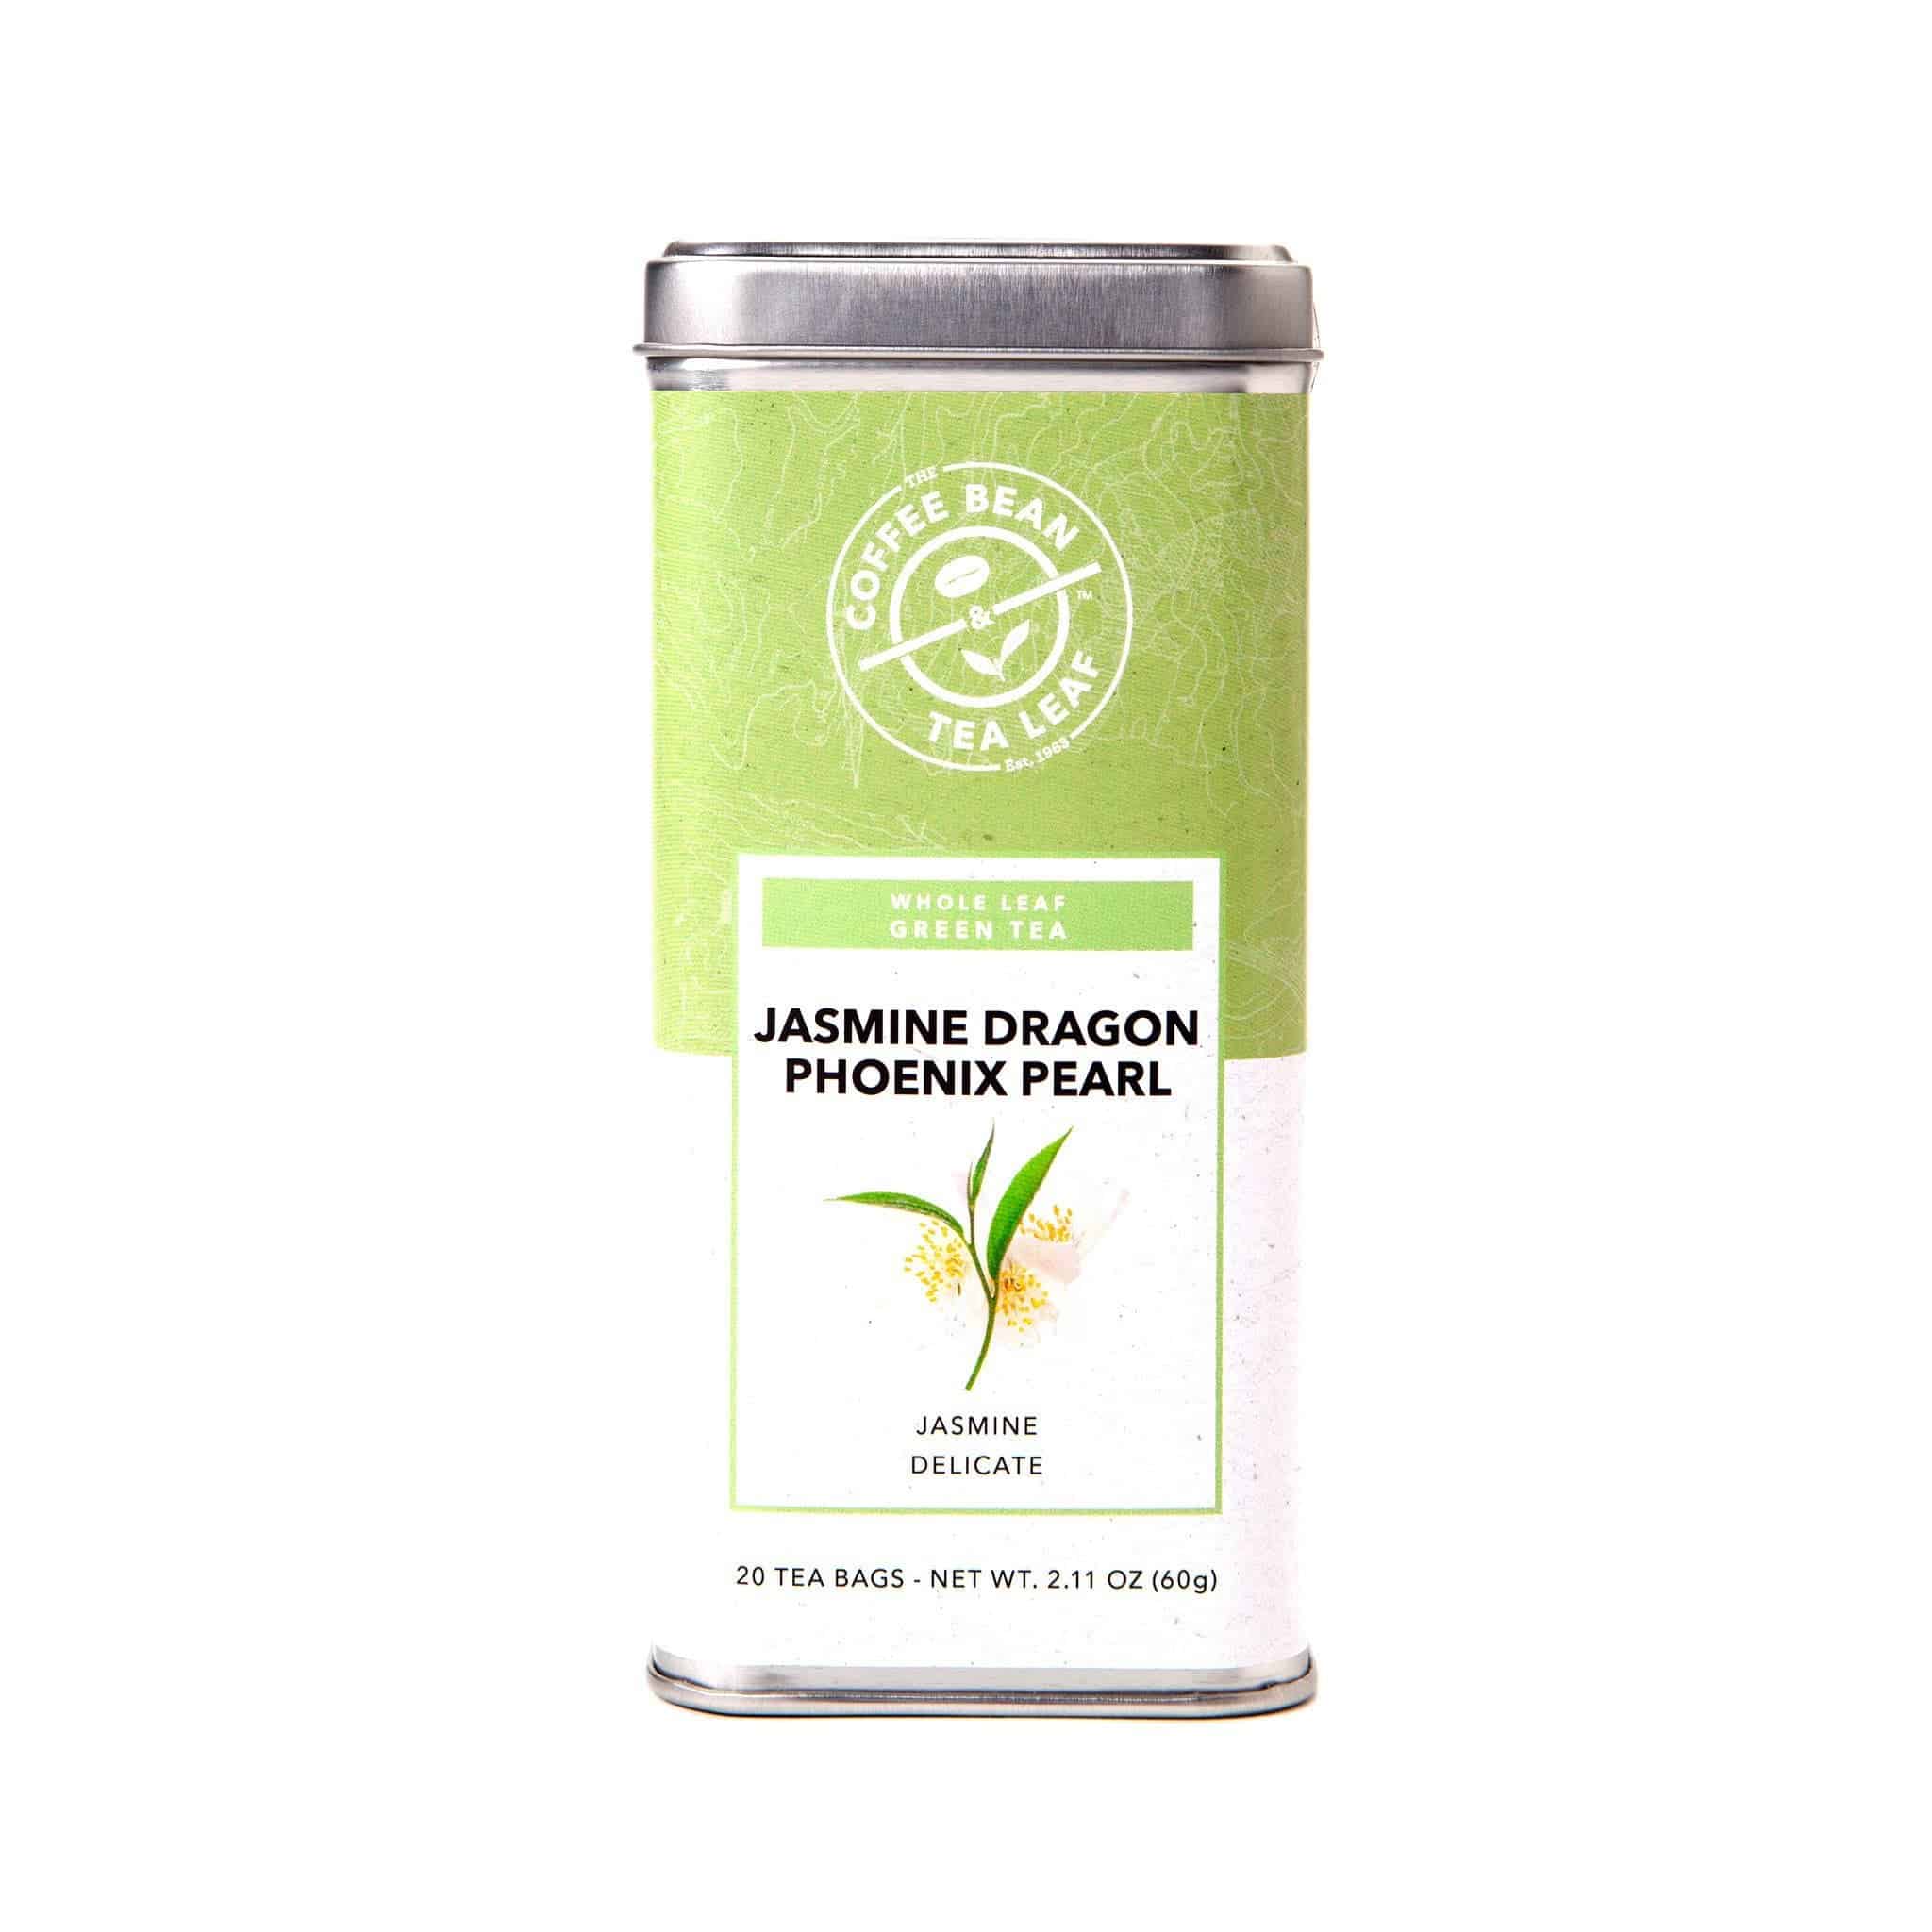 Jasmine Flowers - Prestogeorge Coffee & Tea